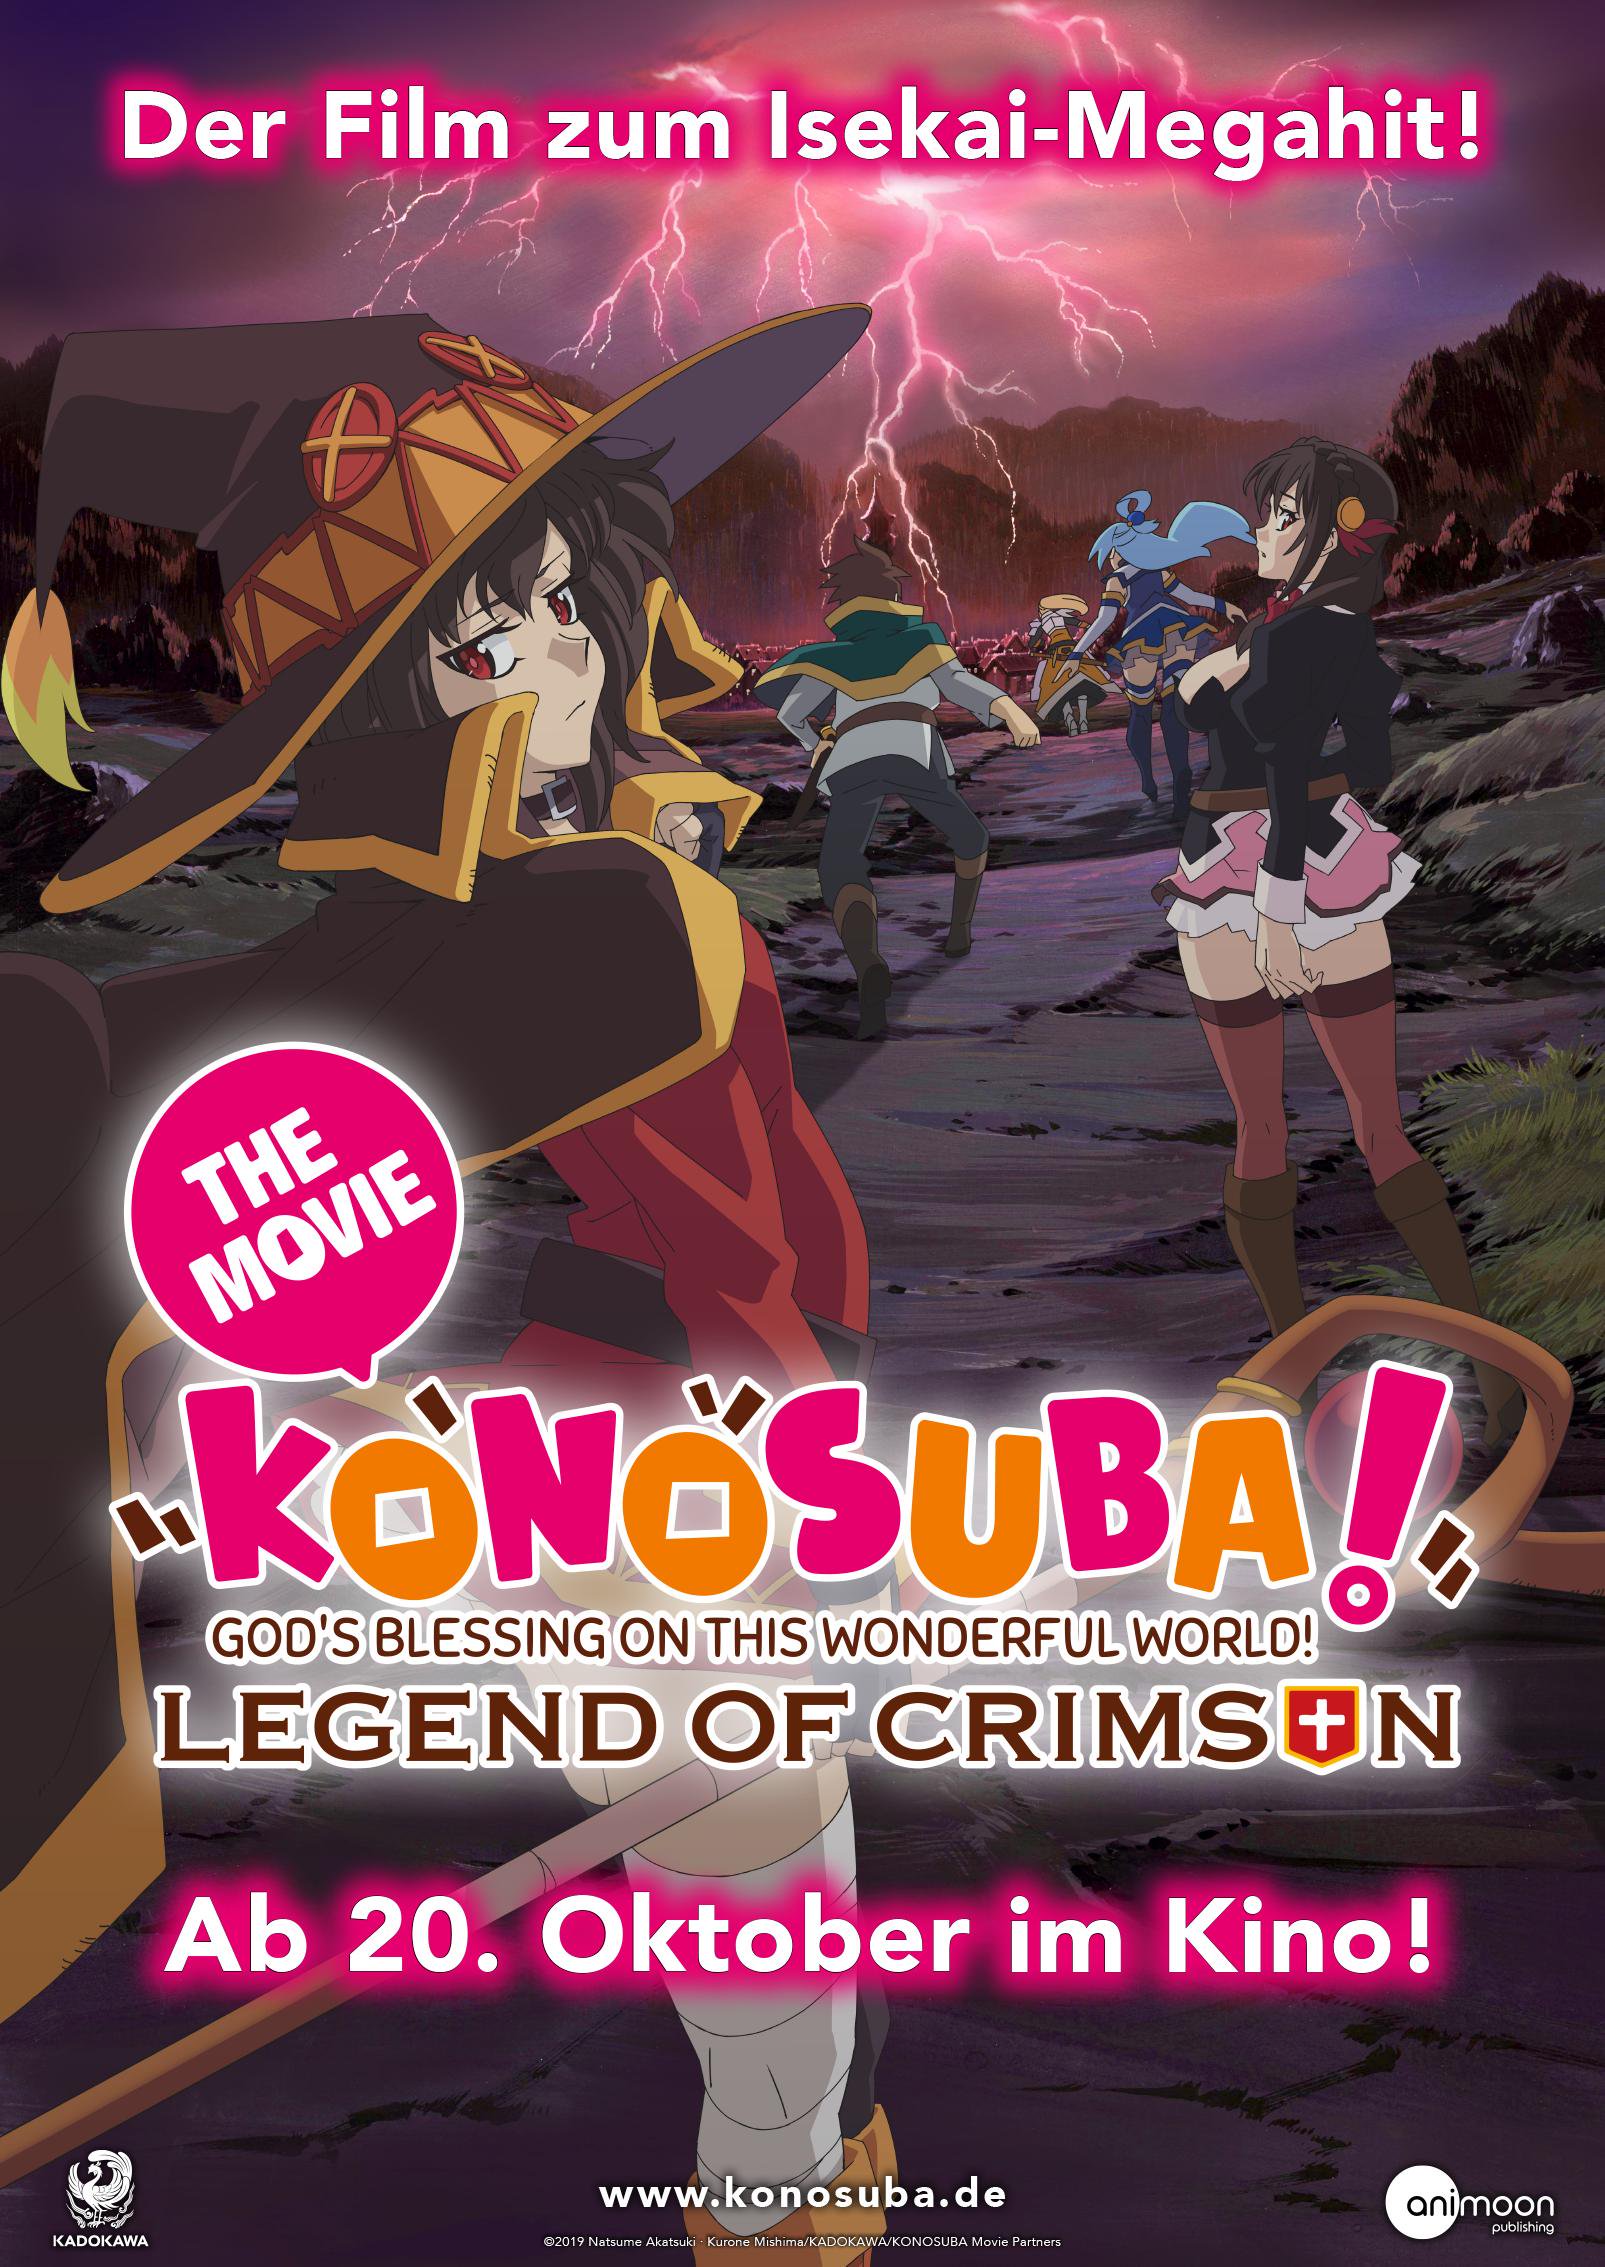 KonoSuba: Legend of Crimson com data de estreia – PróximoNível